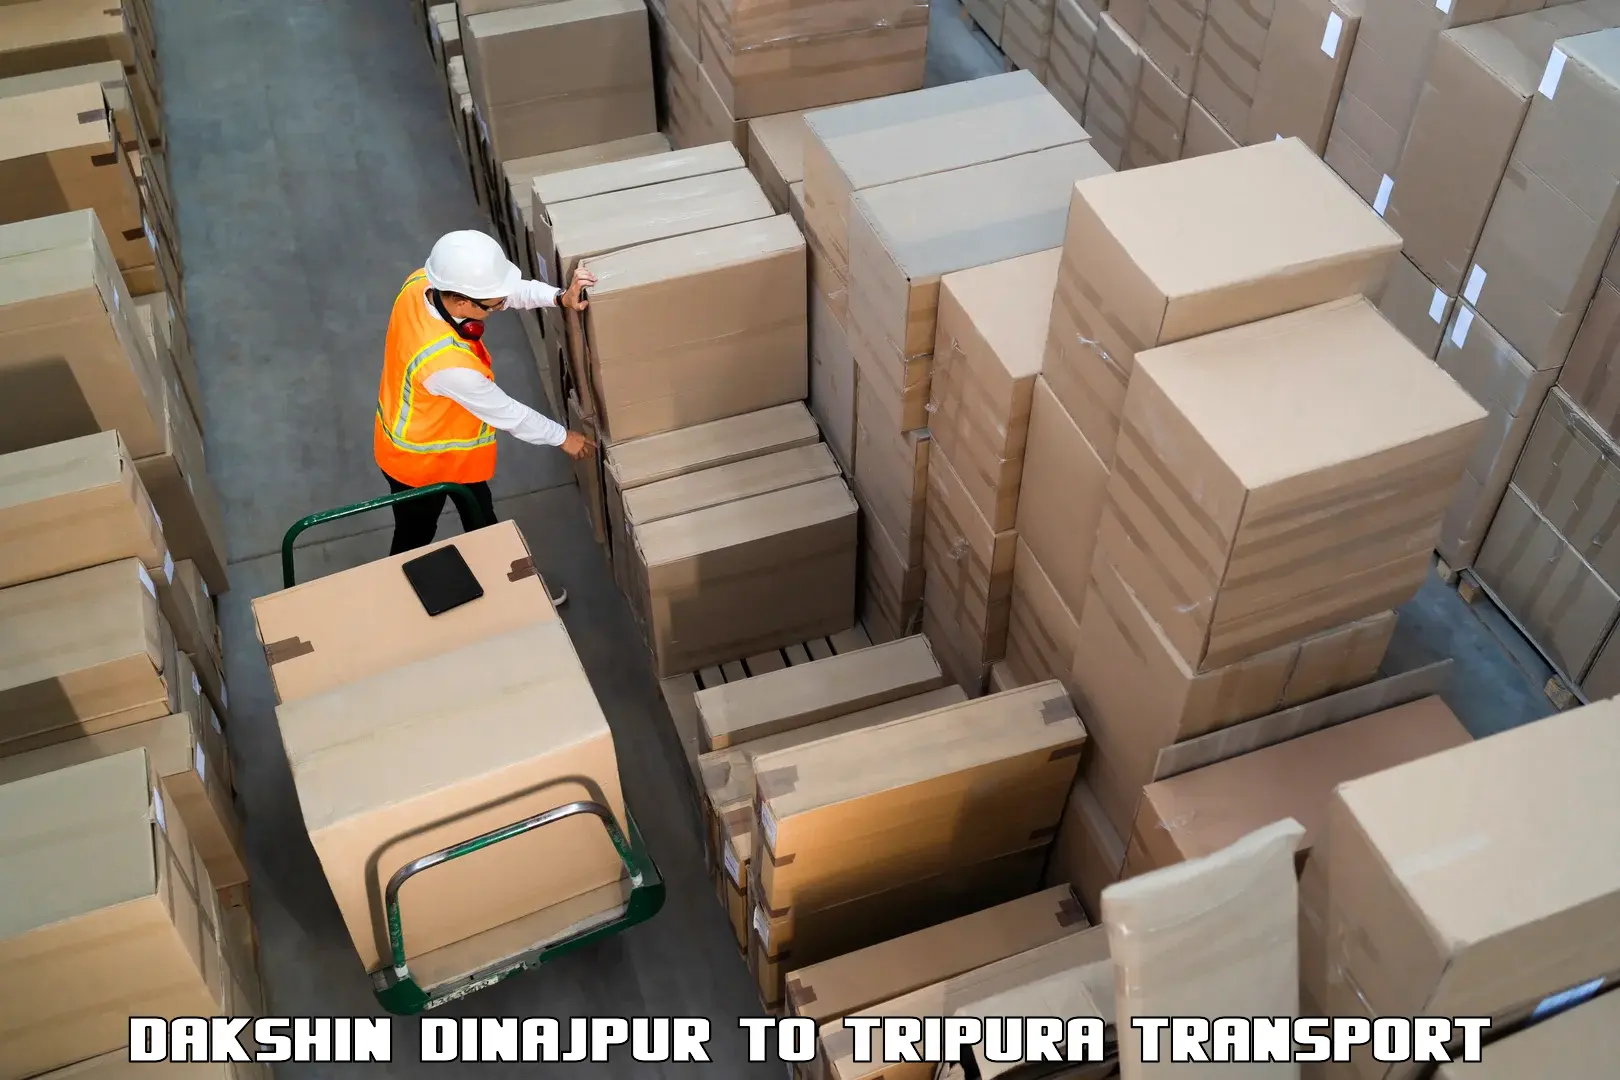 Interstate transport services in Dakshin Dinajpur to Udaipur Tripura